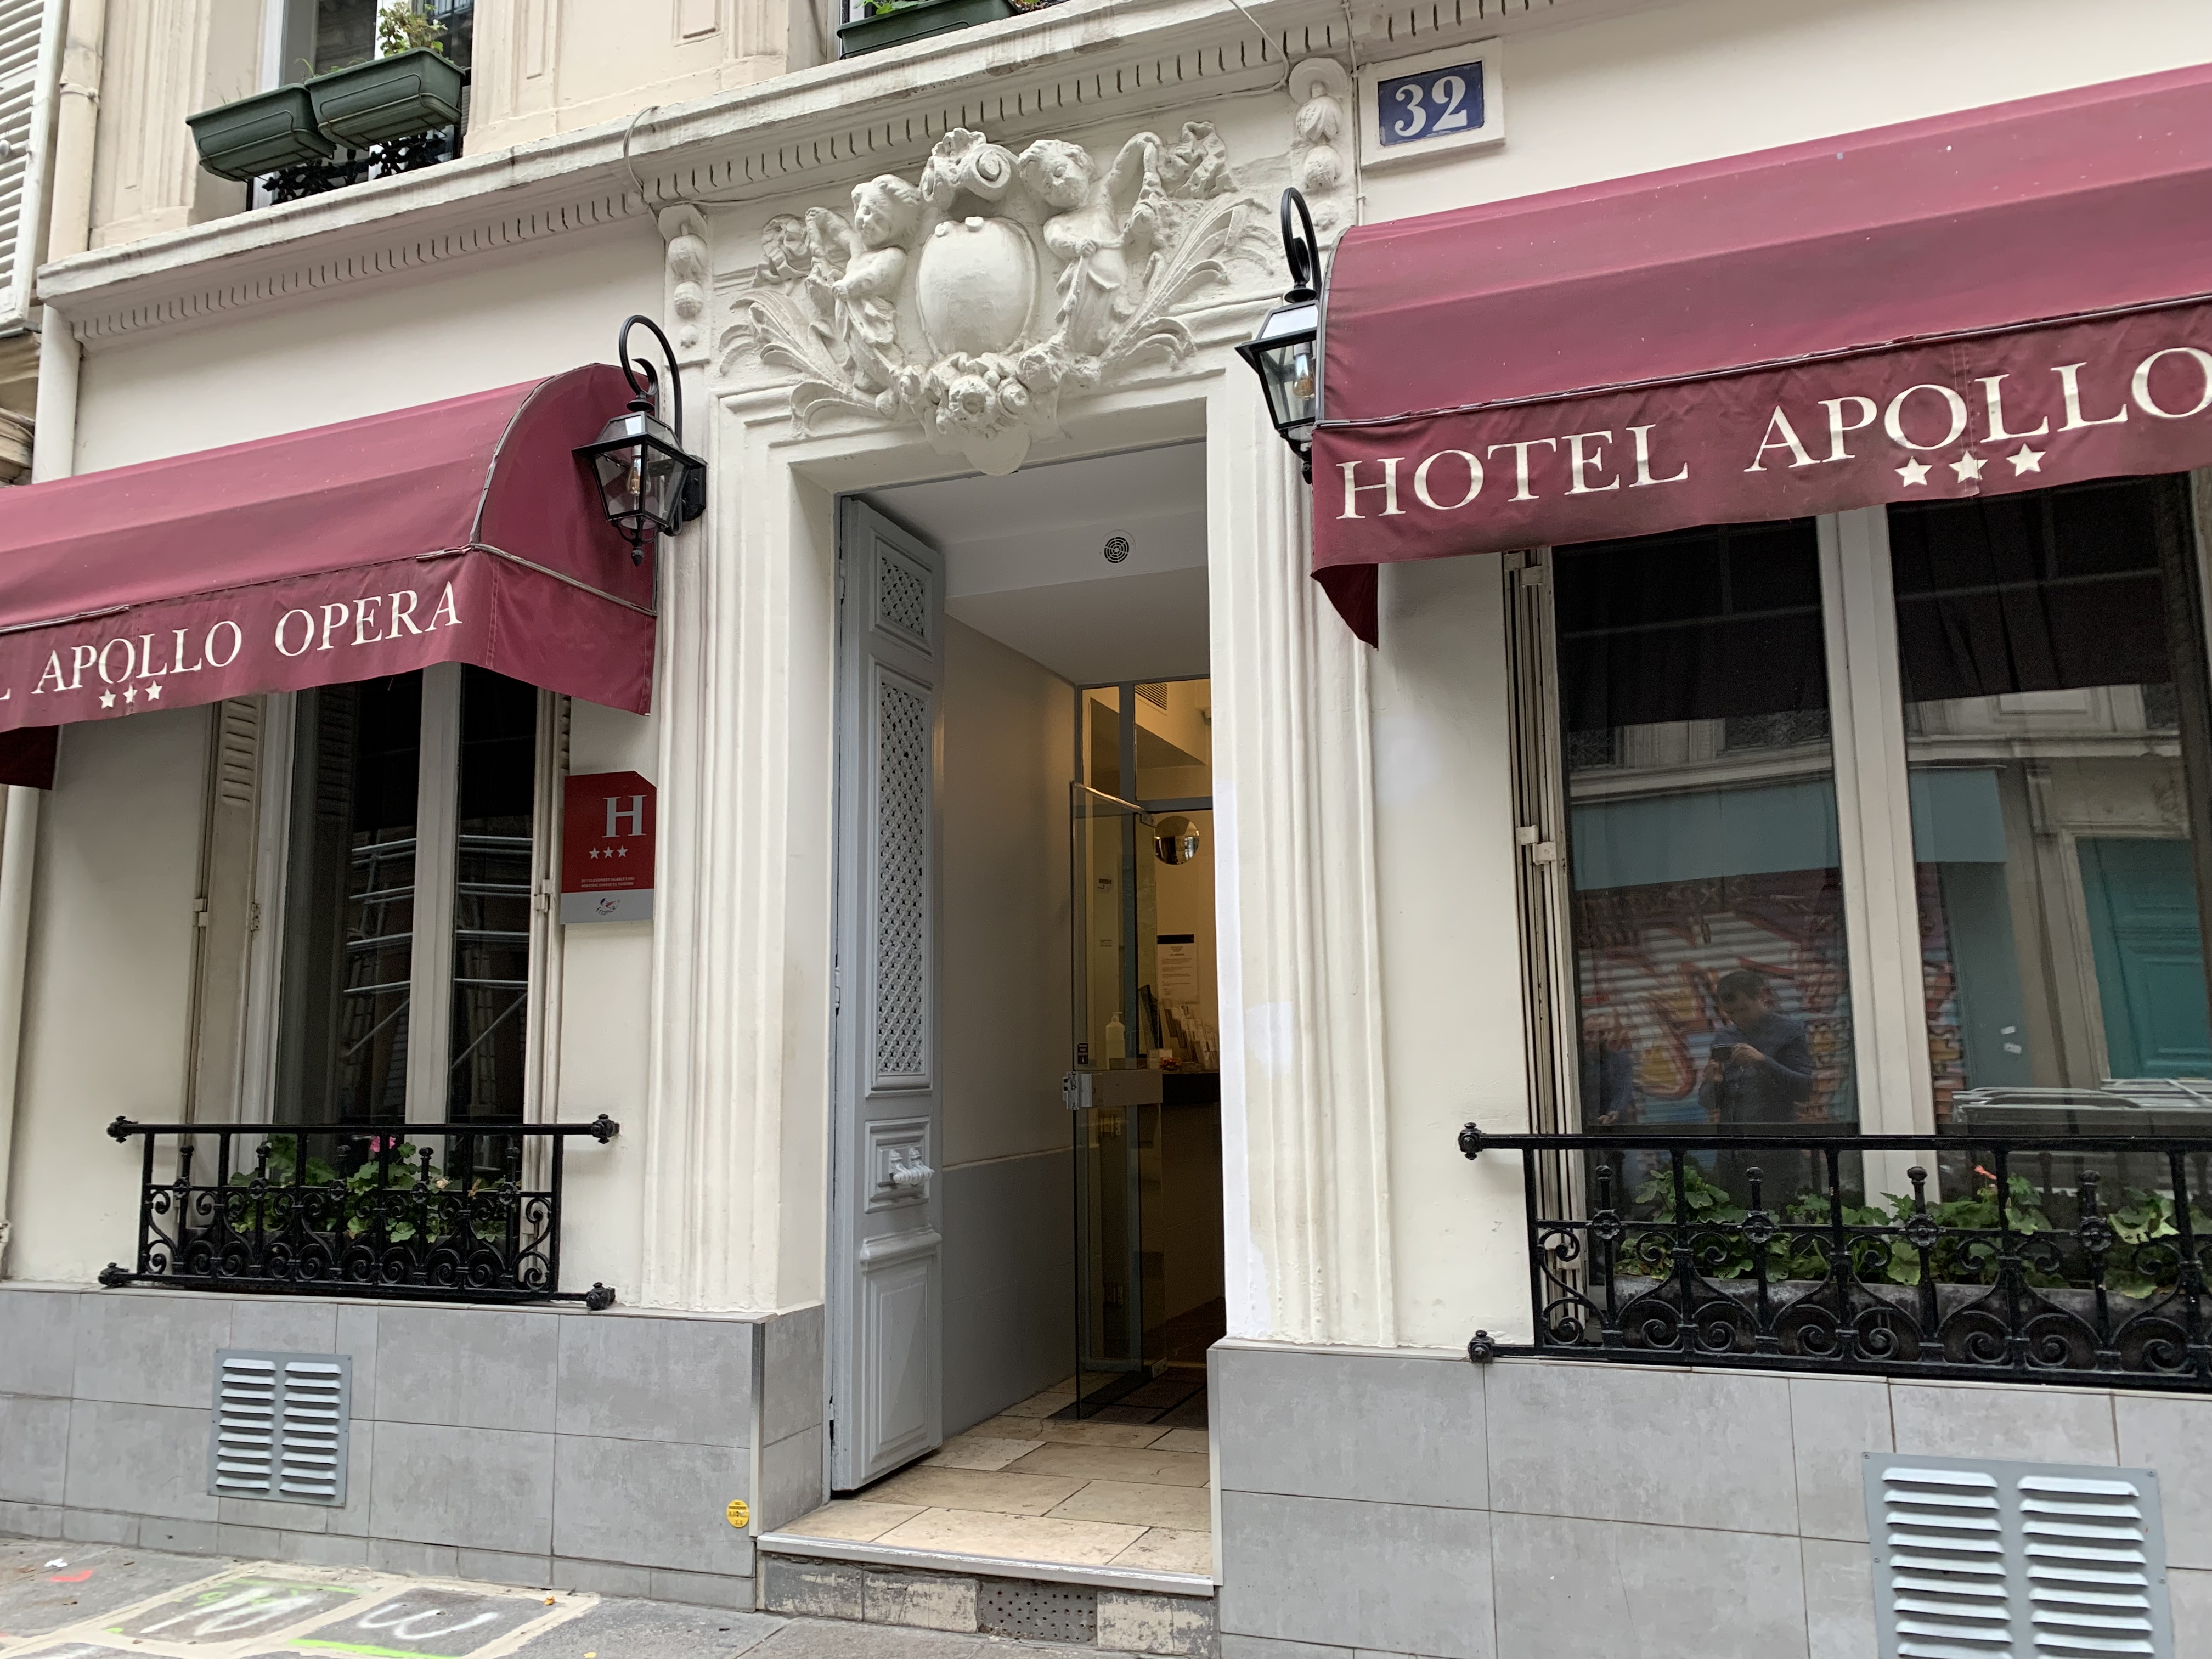 Hotel Apollo Opéra - Accueil